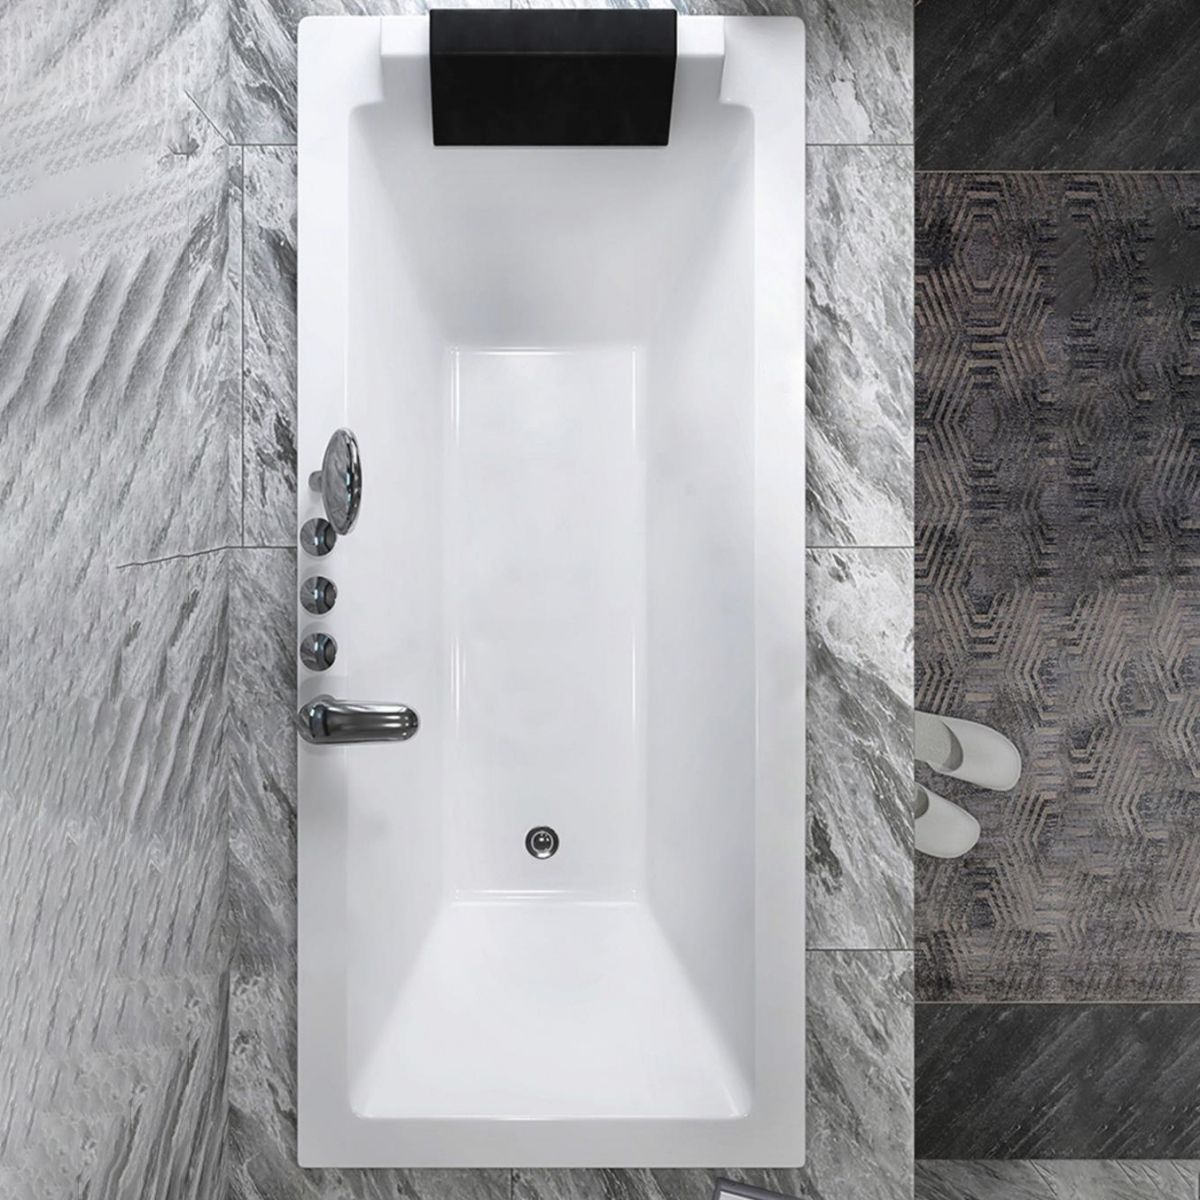 Drop-in White Bath Modern Soaking Acrylic Rectangular Bathtub Clearhalo 'Bathroom Remodel & Bathroom Fixtures' 'Bathtubs' 'Home Improvement' 'home_improvement' 'home_improvement_bathtubs' 'Showers & Bathtubs' 1200x1200_47f4a54a-cd0e-4d19-8d85-4b887b513c45